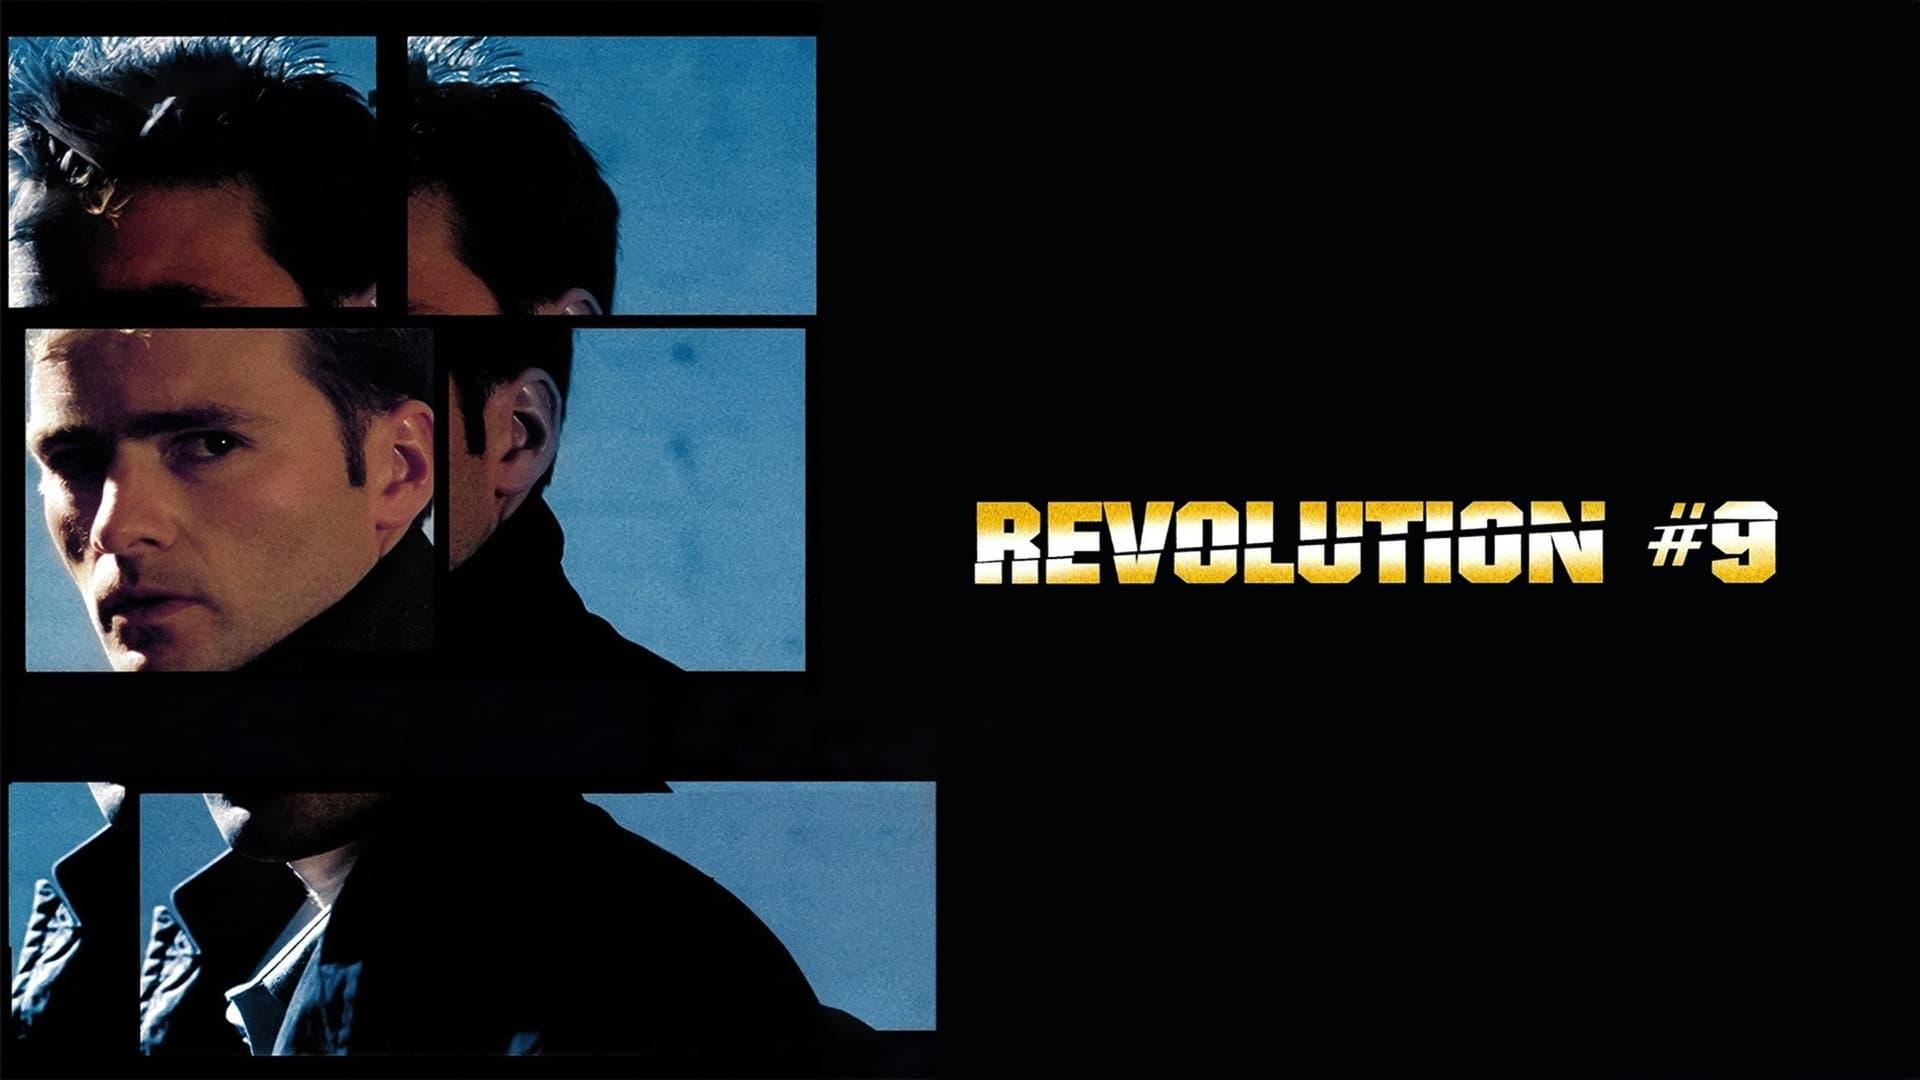 Revolution #9 backdrop